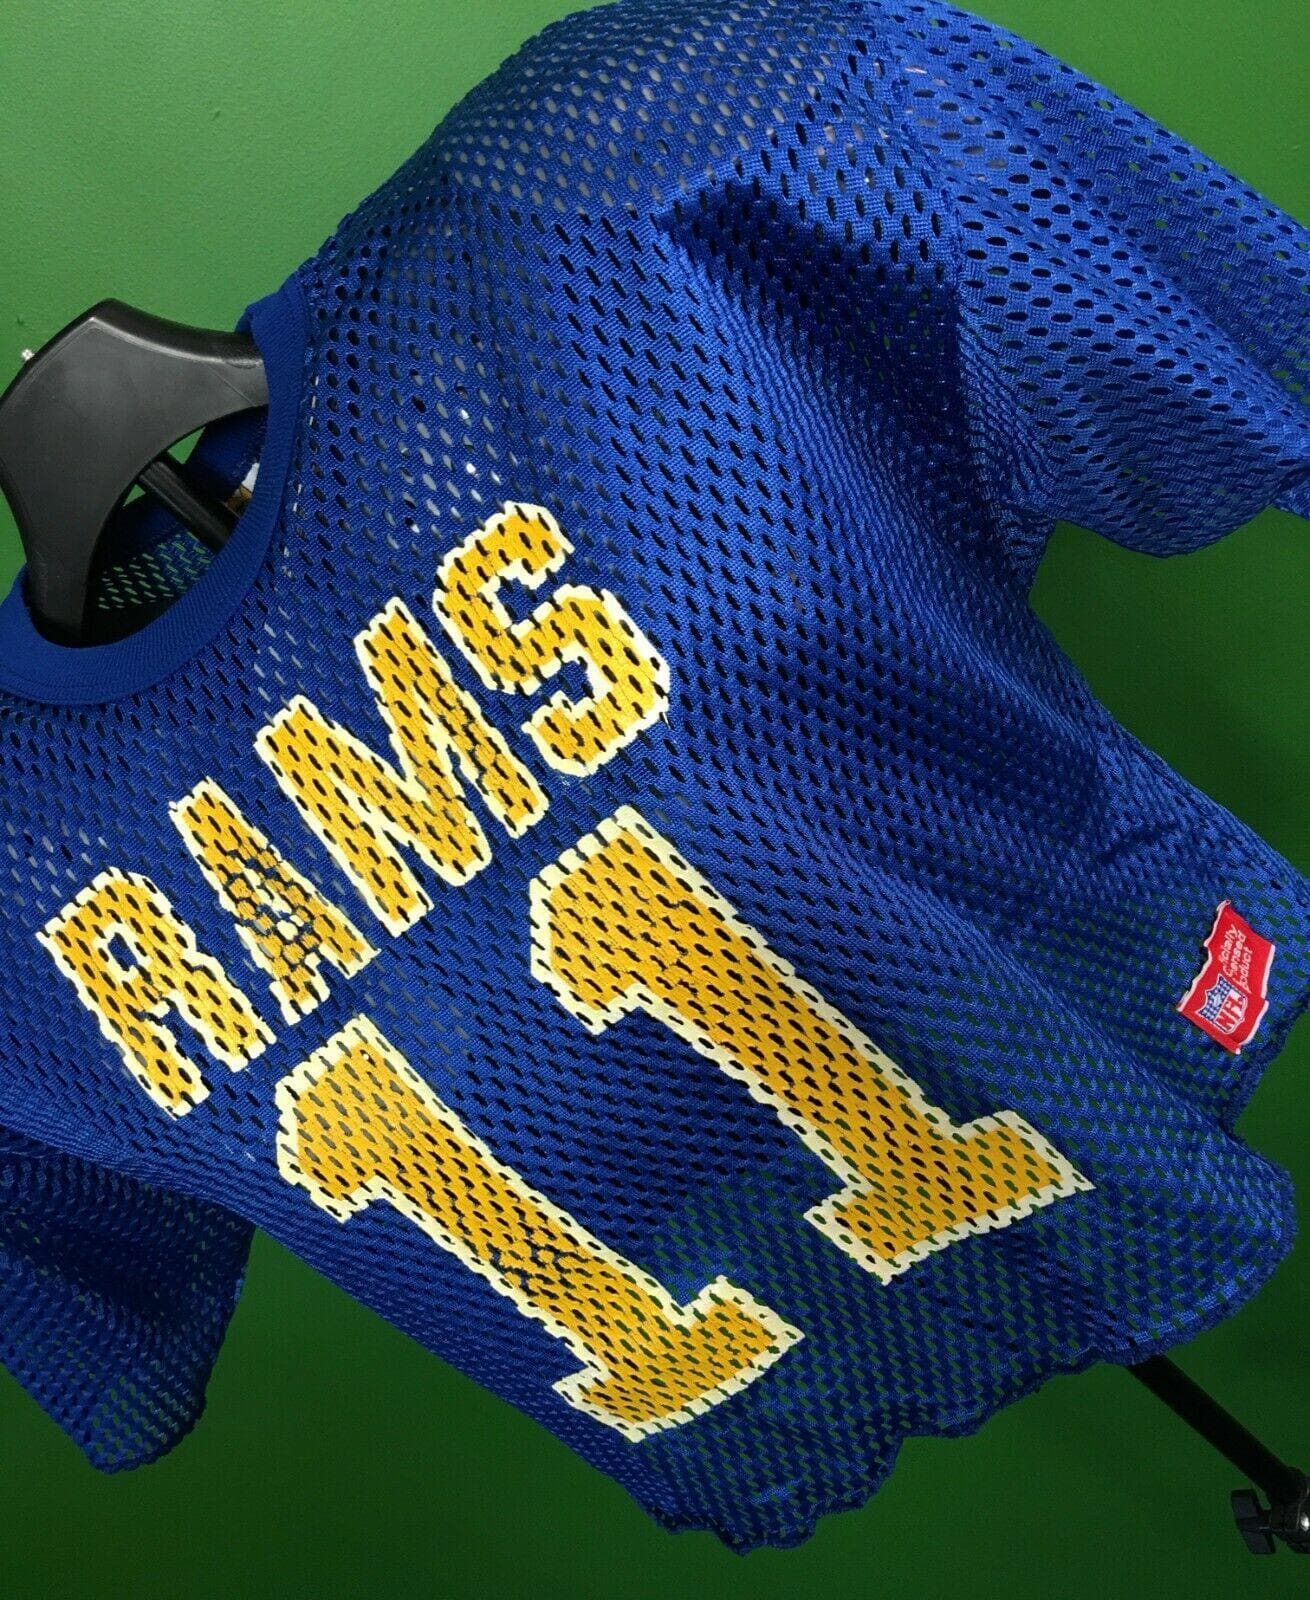 NFL Los Angeles Rams Sand Knit McGregor Vintage Mesh Jersey Men's Large